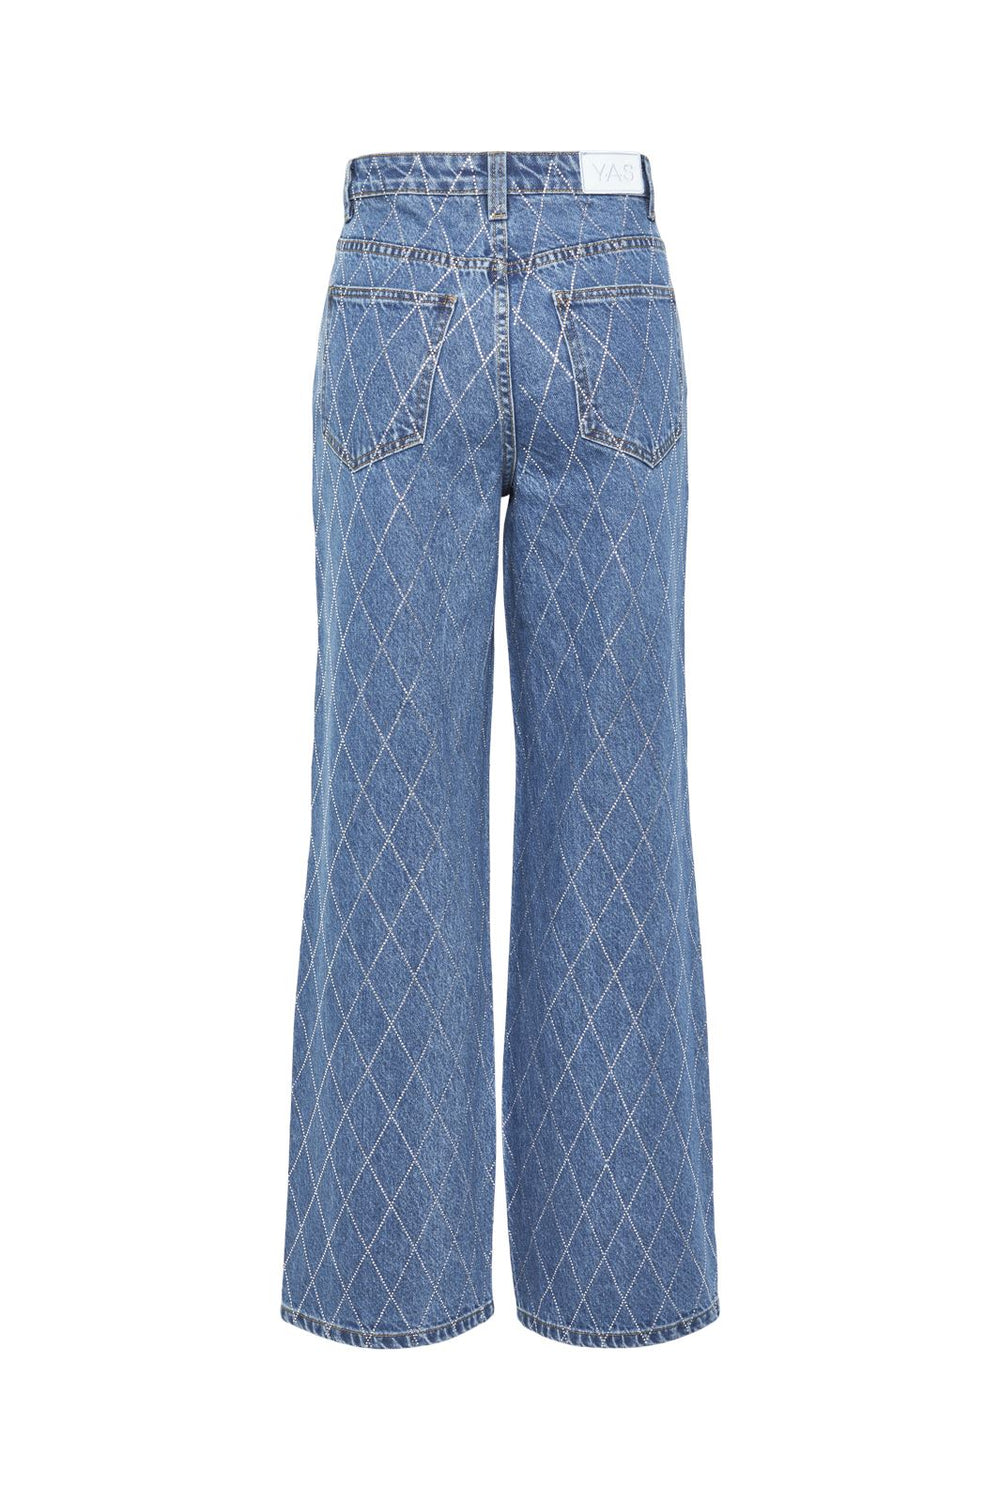 Y.A.S - Yasharli Hmw Jeans - 4662321 Medium Blue Denim